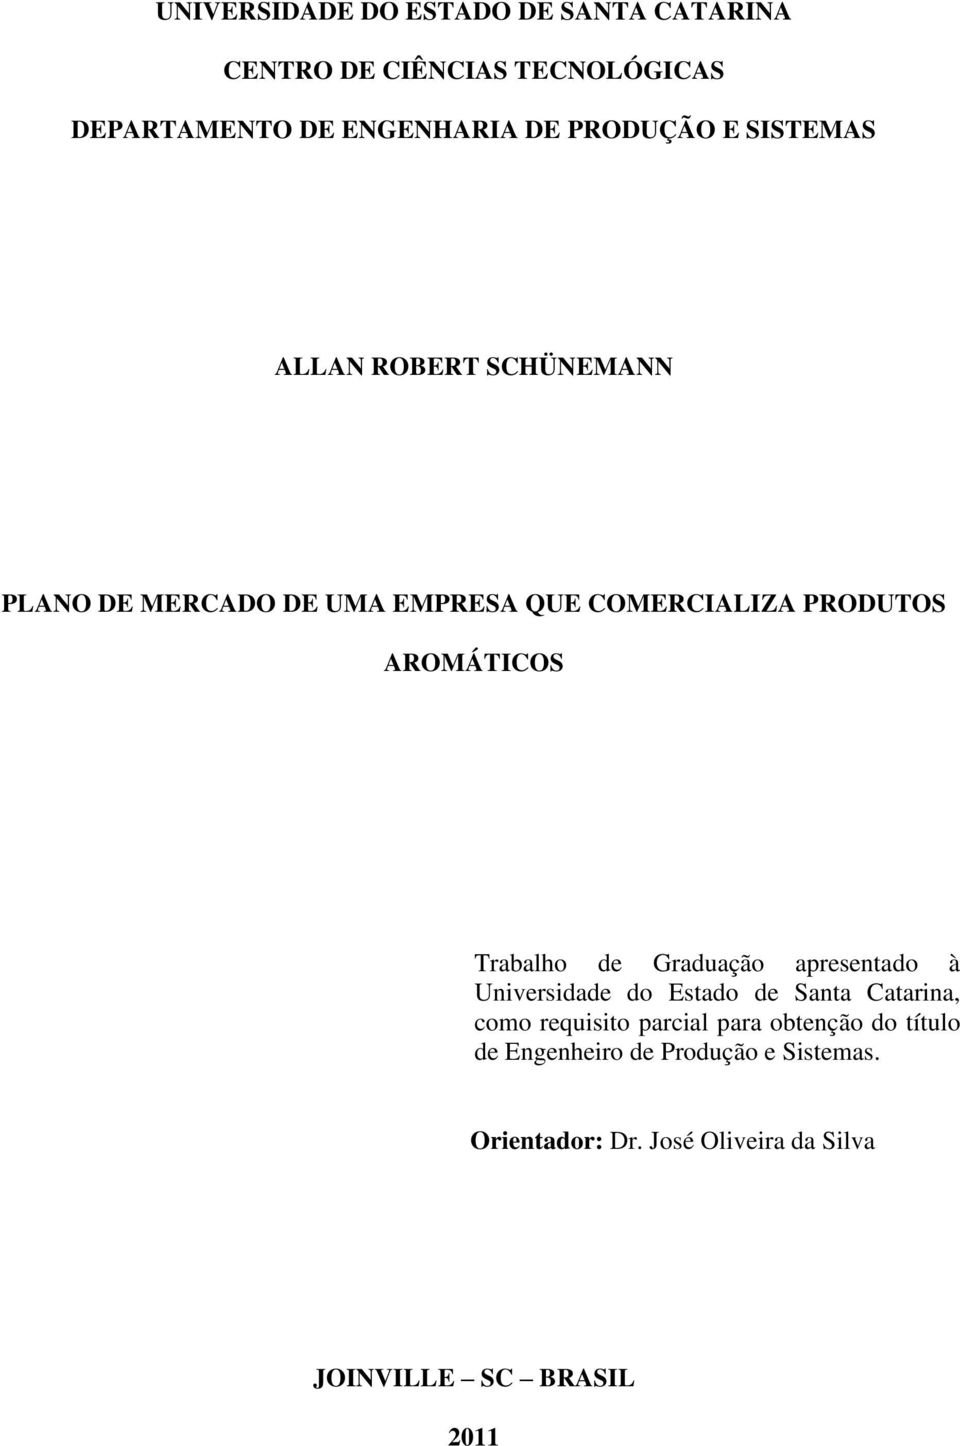 AROMÁTICOS Trabalho de Graduação apresentado à Universidade do Estado de Santa Catarina, como requisito